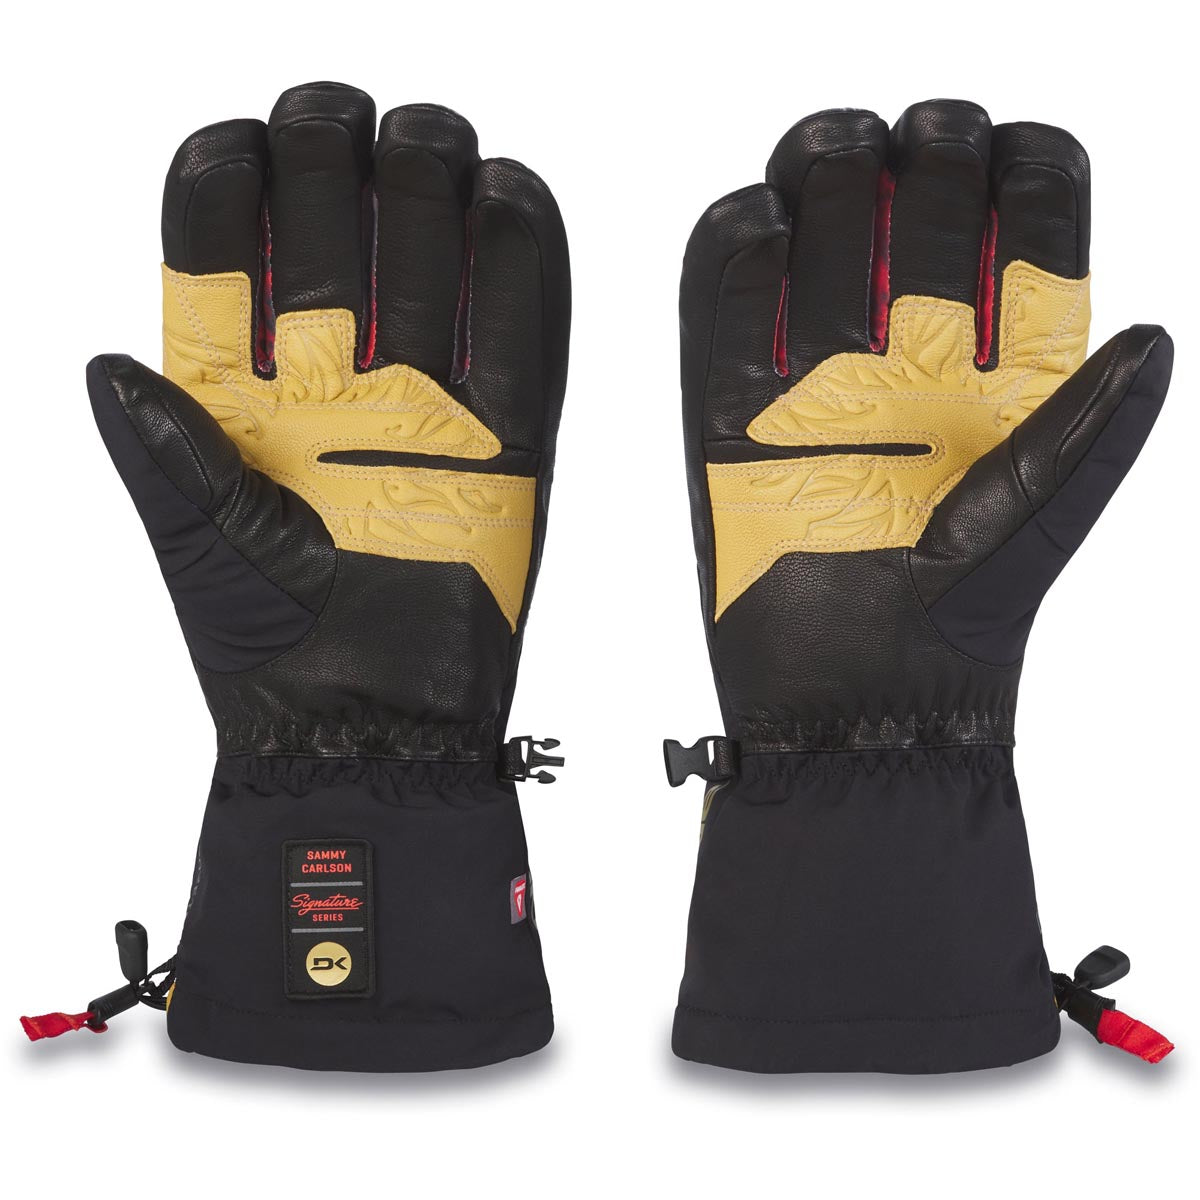 Dakine Team Excursion Gore-tex Glove Sammy Carlson Snowboard Gloves - Black image 2